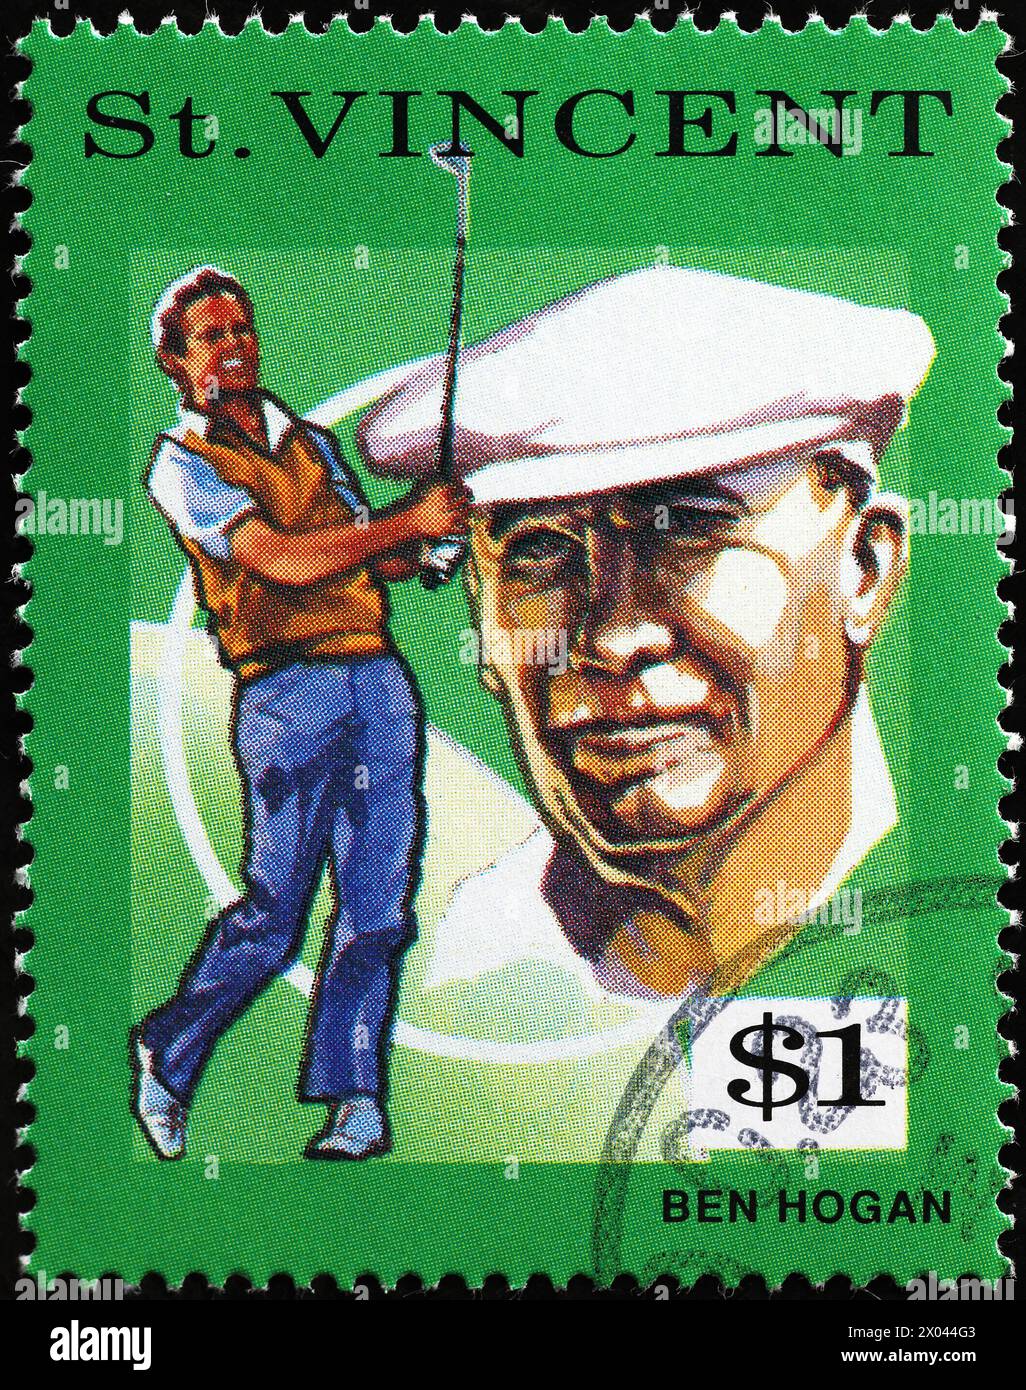 Golfista Ben Hogan sul francobollo di Saint Vincent Foto Stock